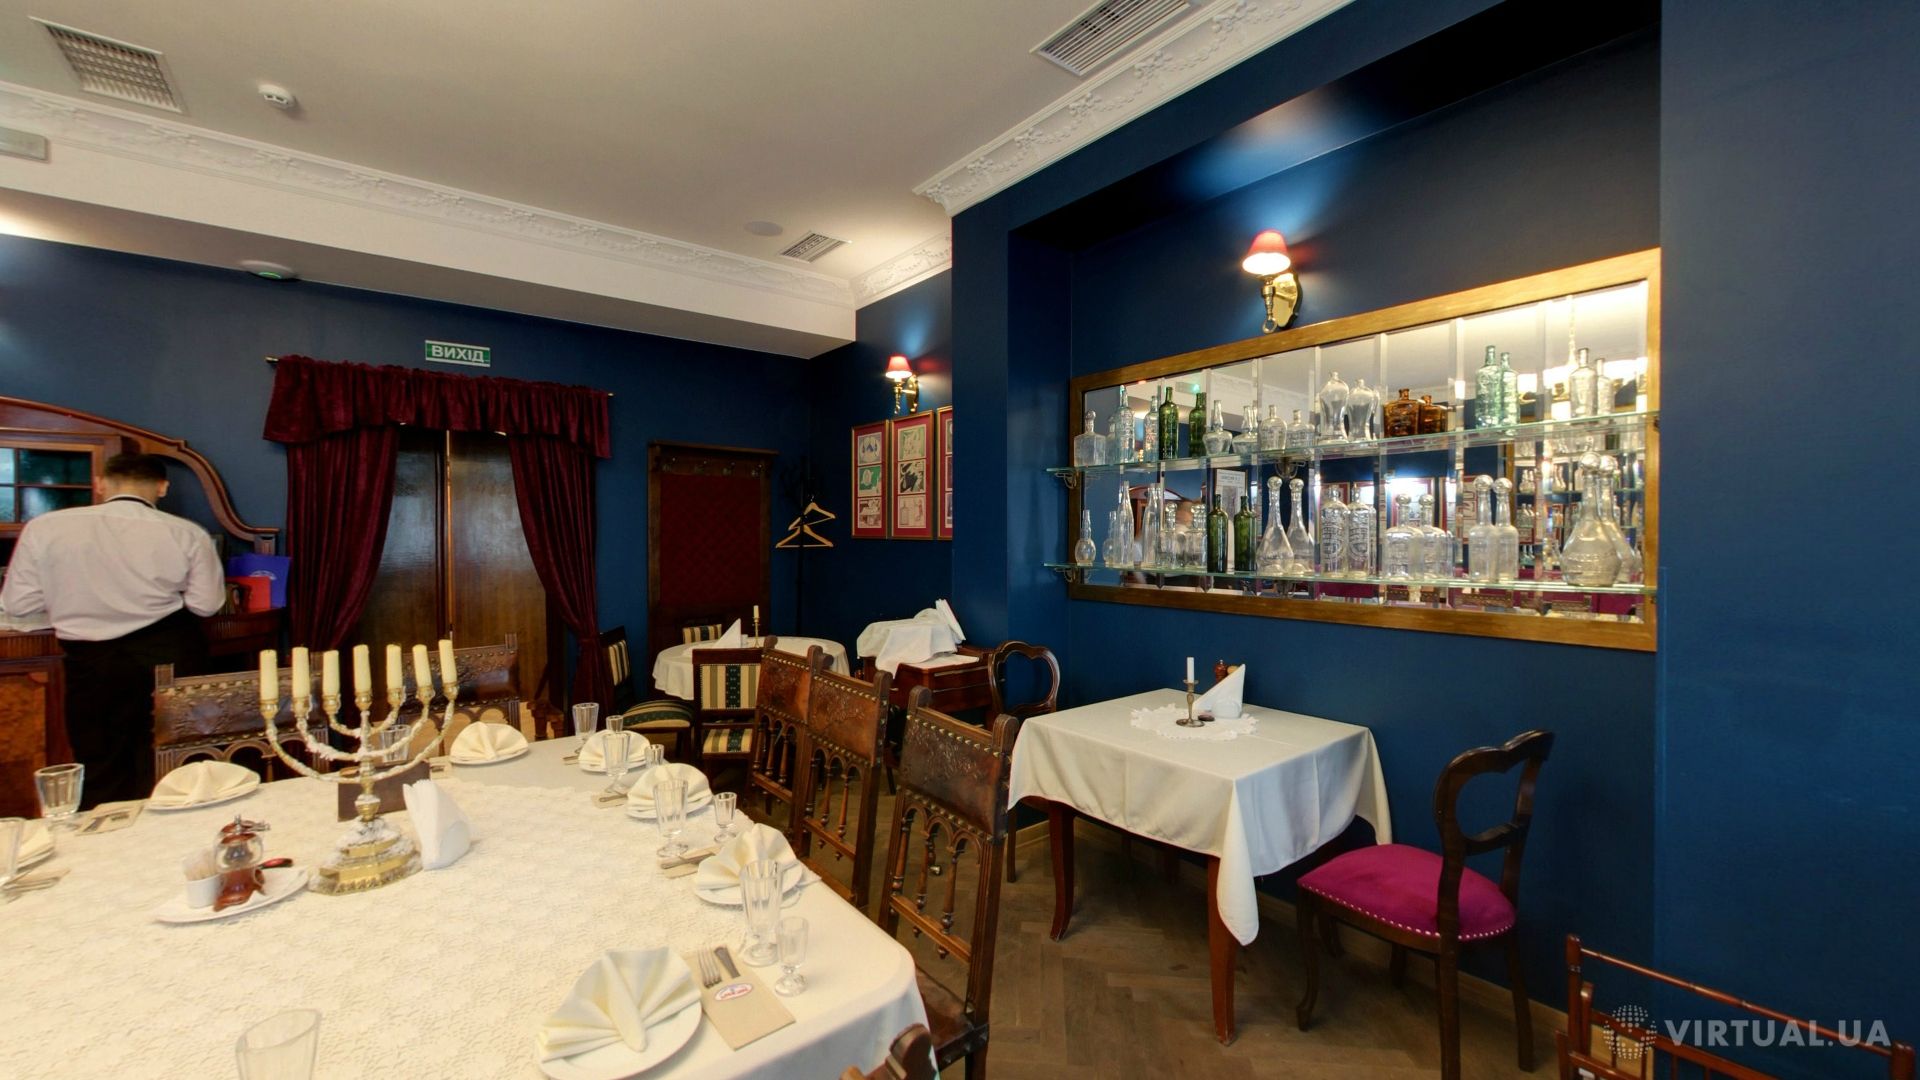 Bachevski Restaurant, photo